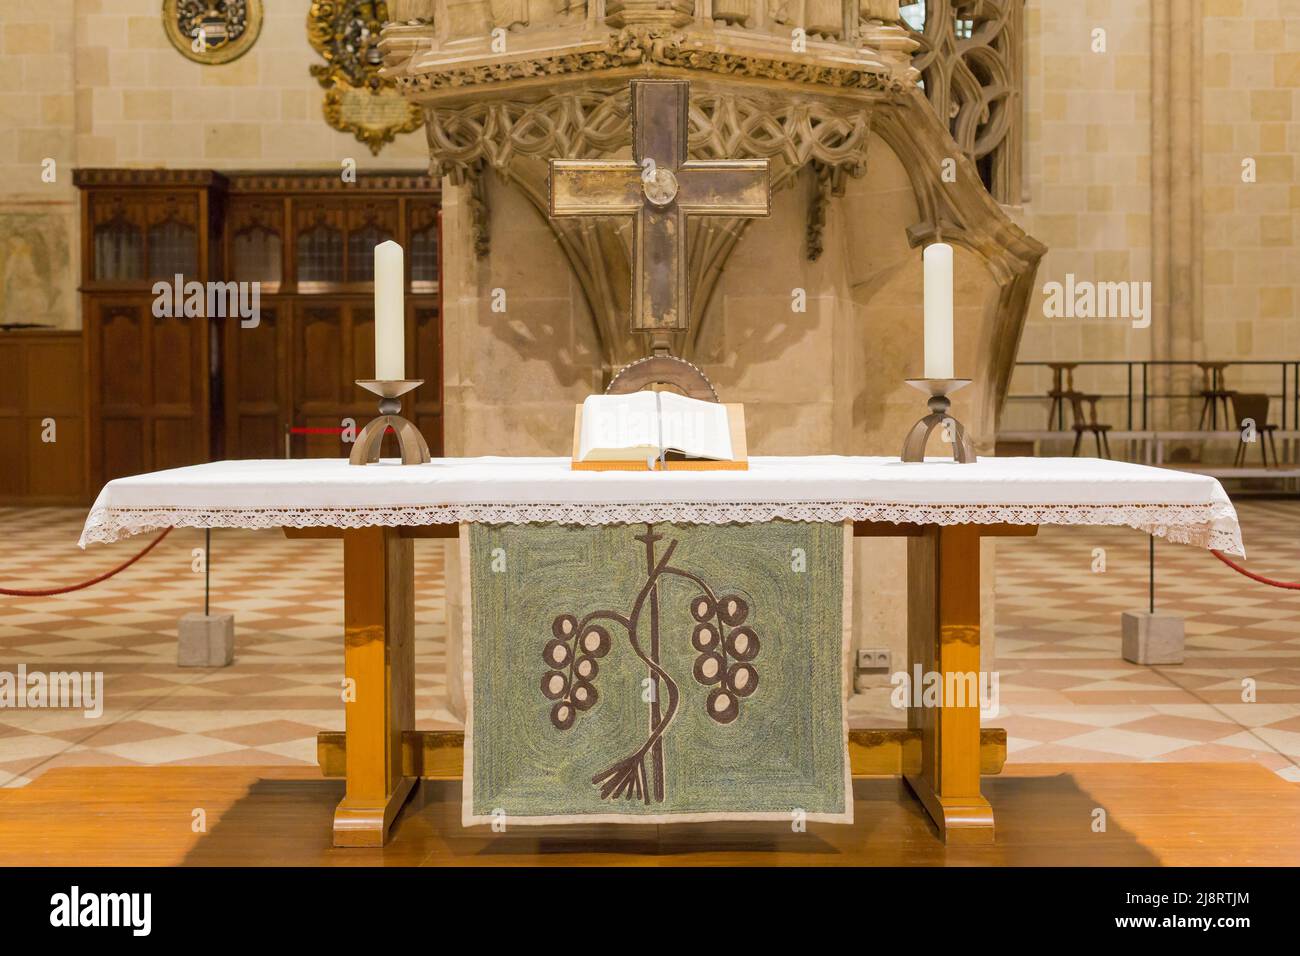 Ulm, Deutschland - 7. Aug 2021: Eine bibel auf einem Altar im Ulmer Dom. Symbol für Glauben, christentum und Religion. Stockfoto